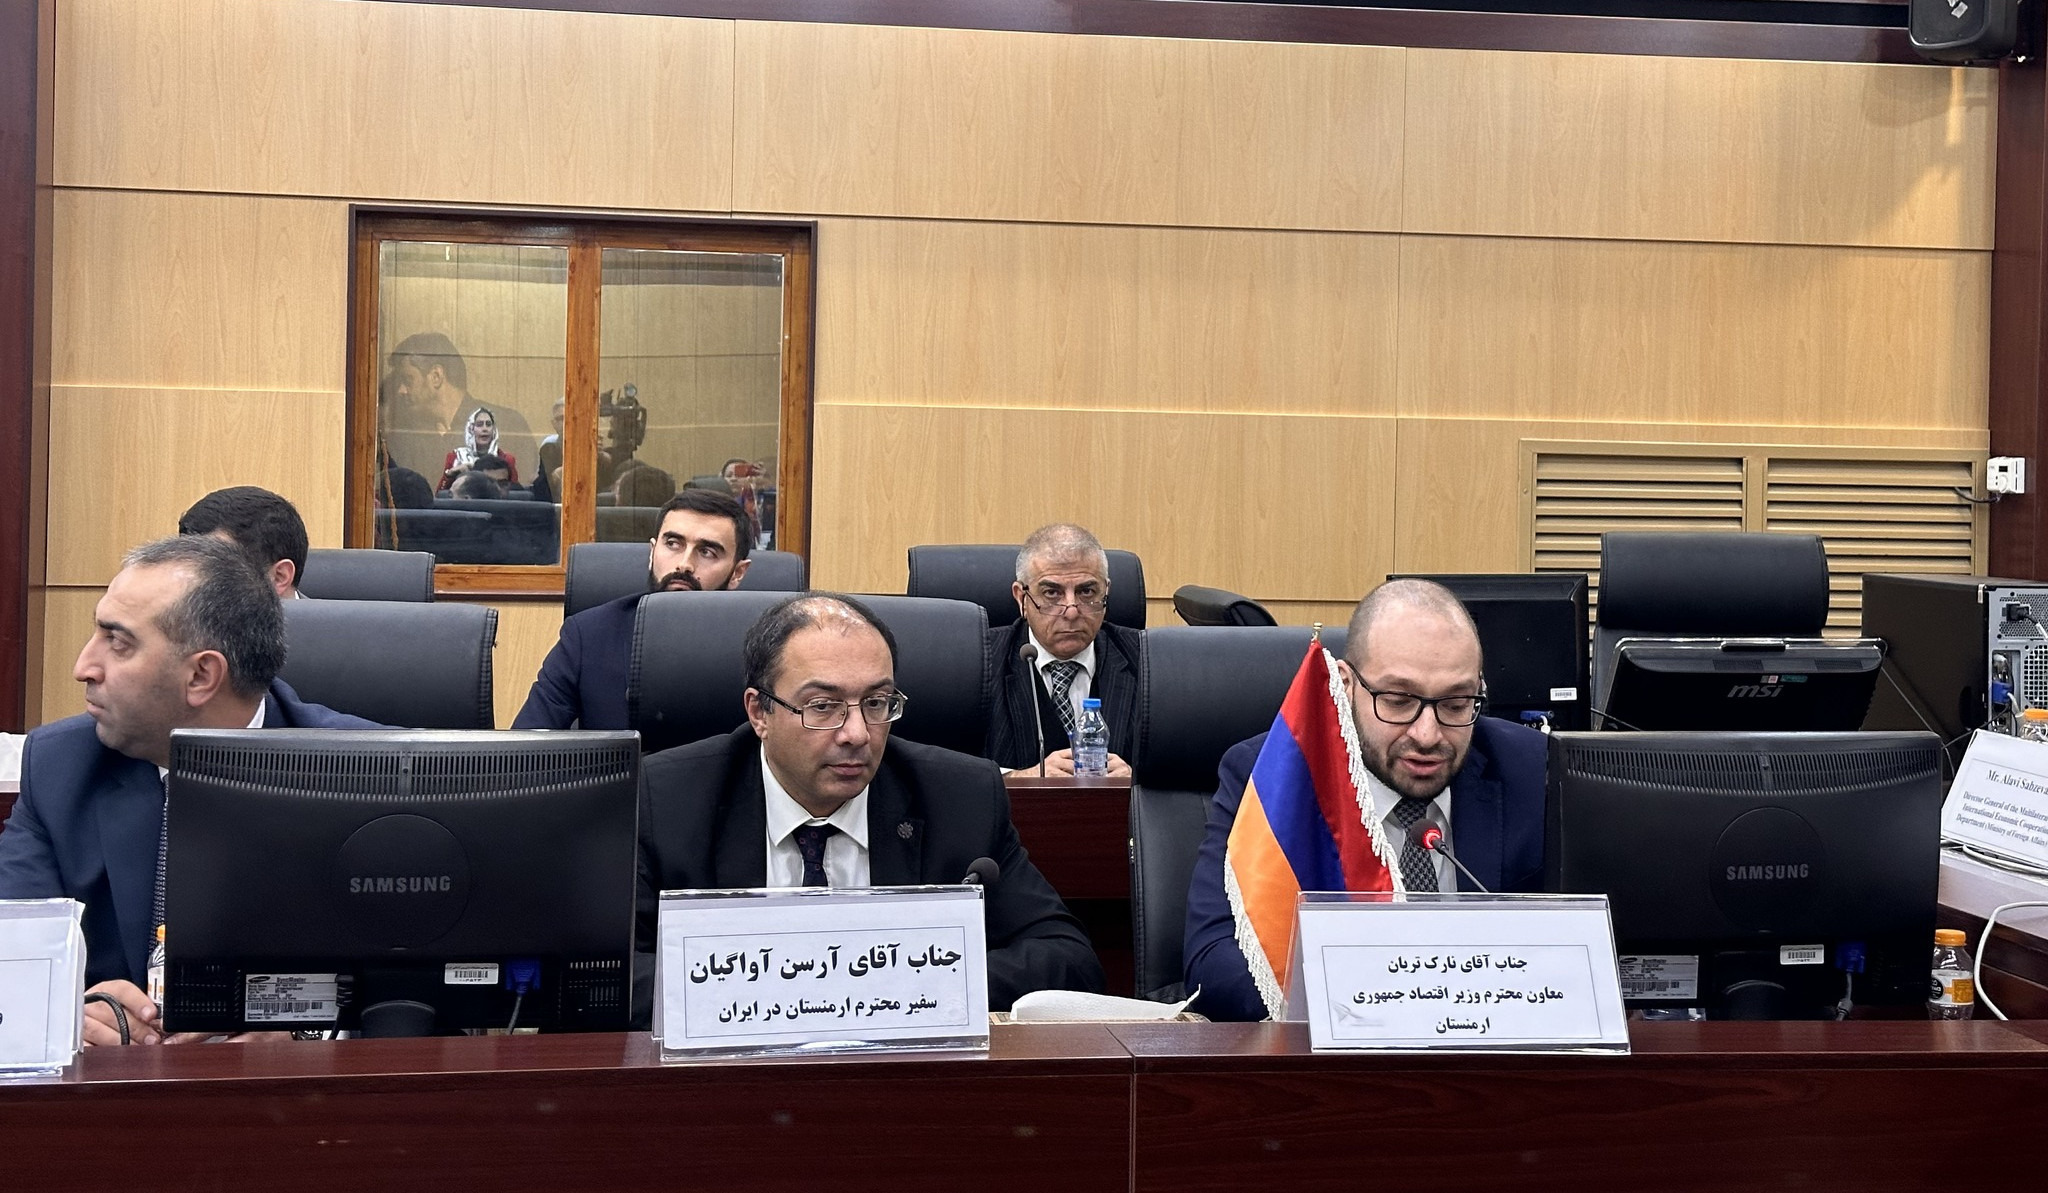 Թեհրանում տեղի ունեցած ԵԱՏՄ երկրների տնտեսական նիստում կարևորվել է հայ-իրանական առևտրատնտեսական կապերի ընդլայնումը